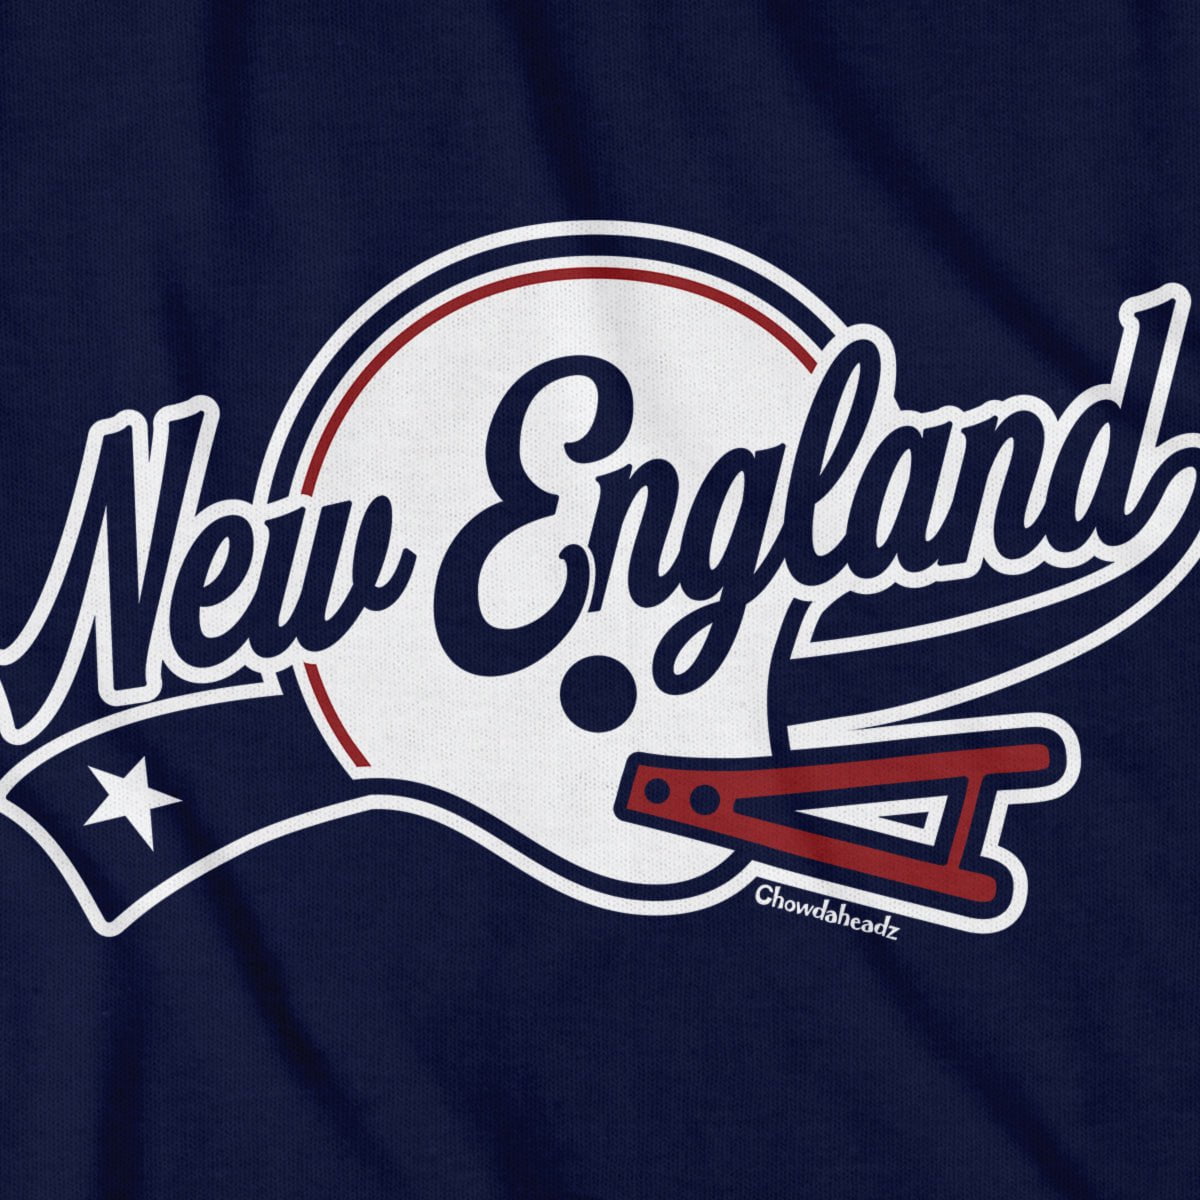 New England Helmet Script T-Shirt - Chowdaheadz